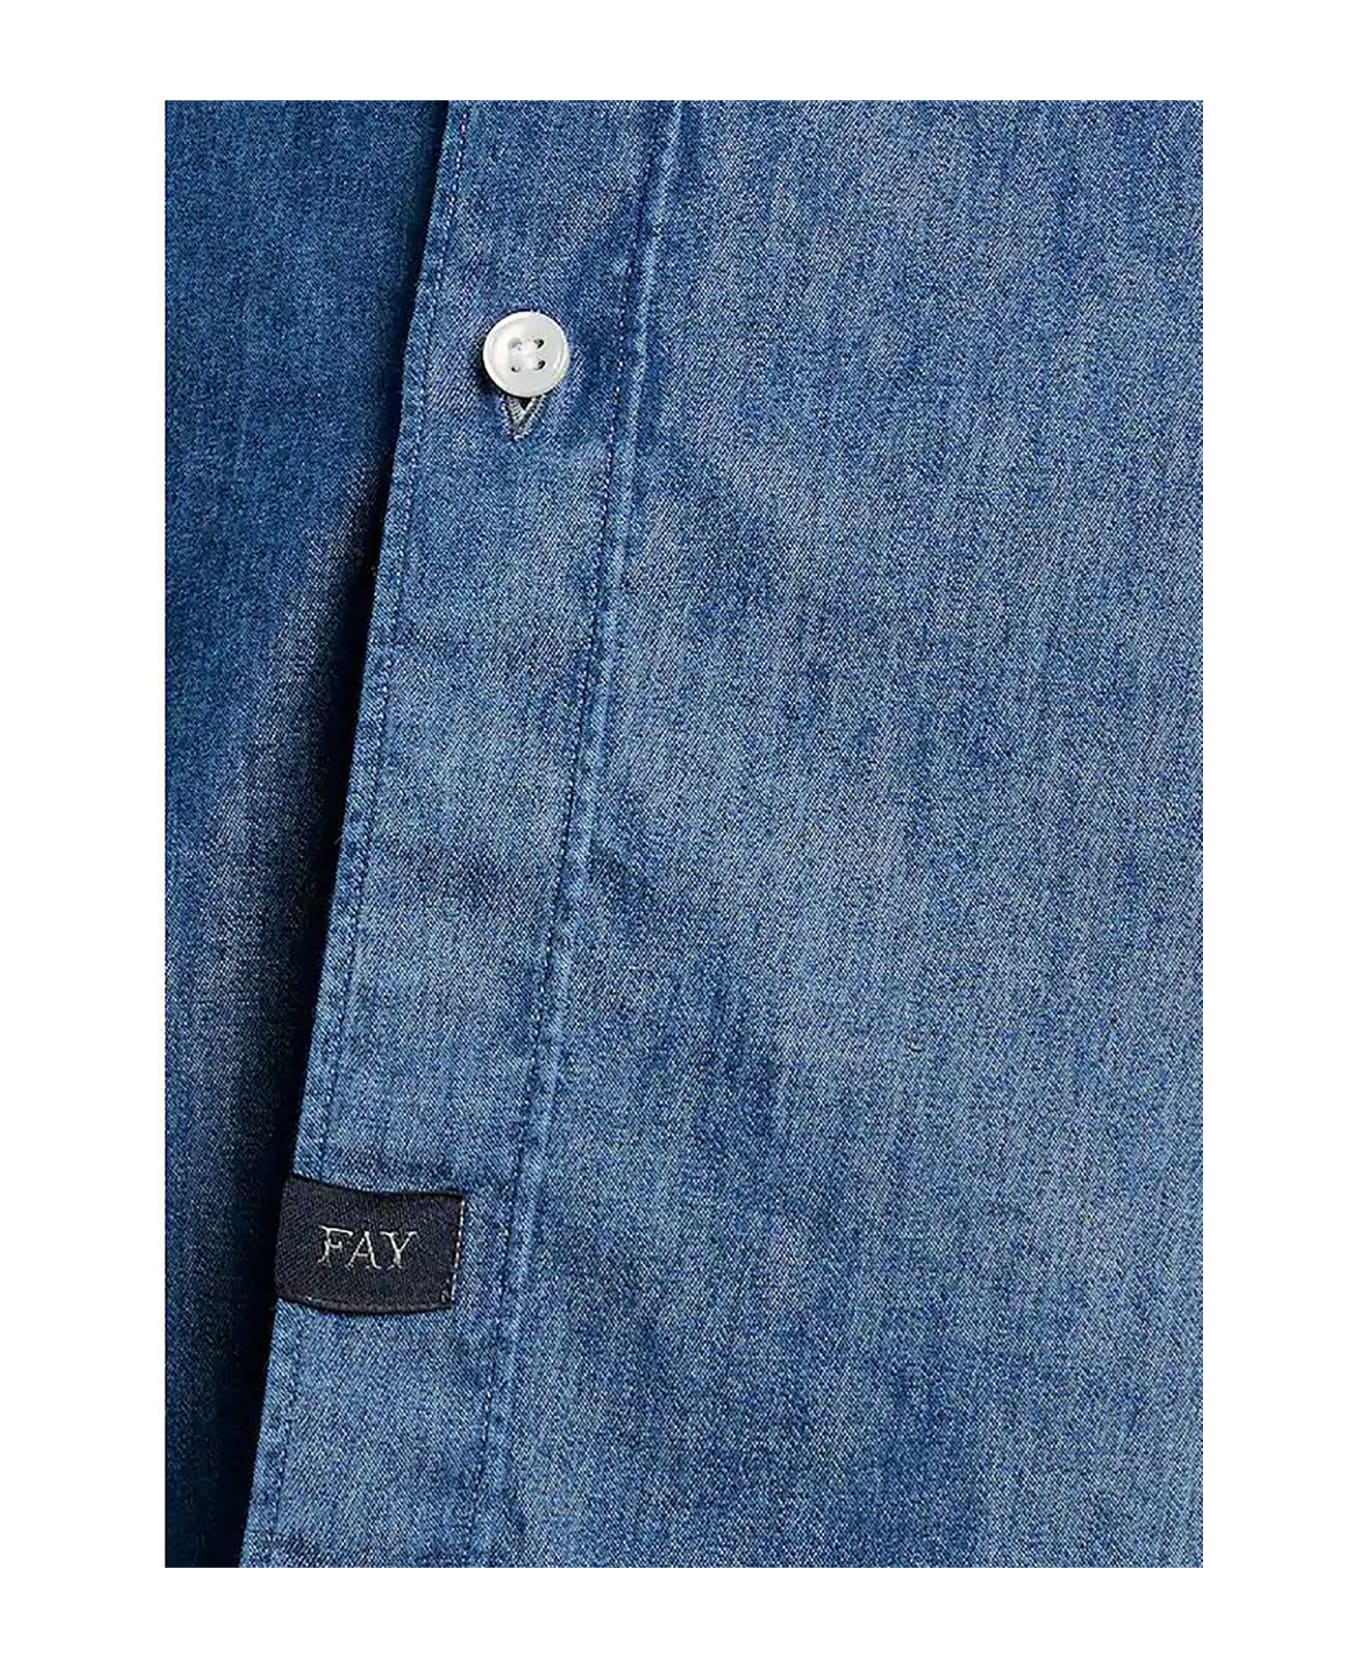 Fay Shirt In Stone-washed Denim - Blu Denim